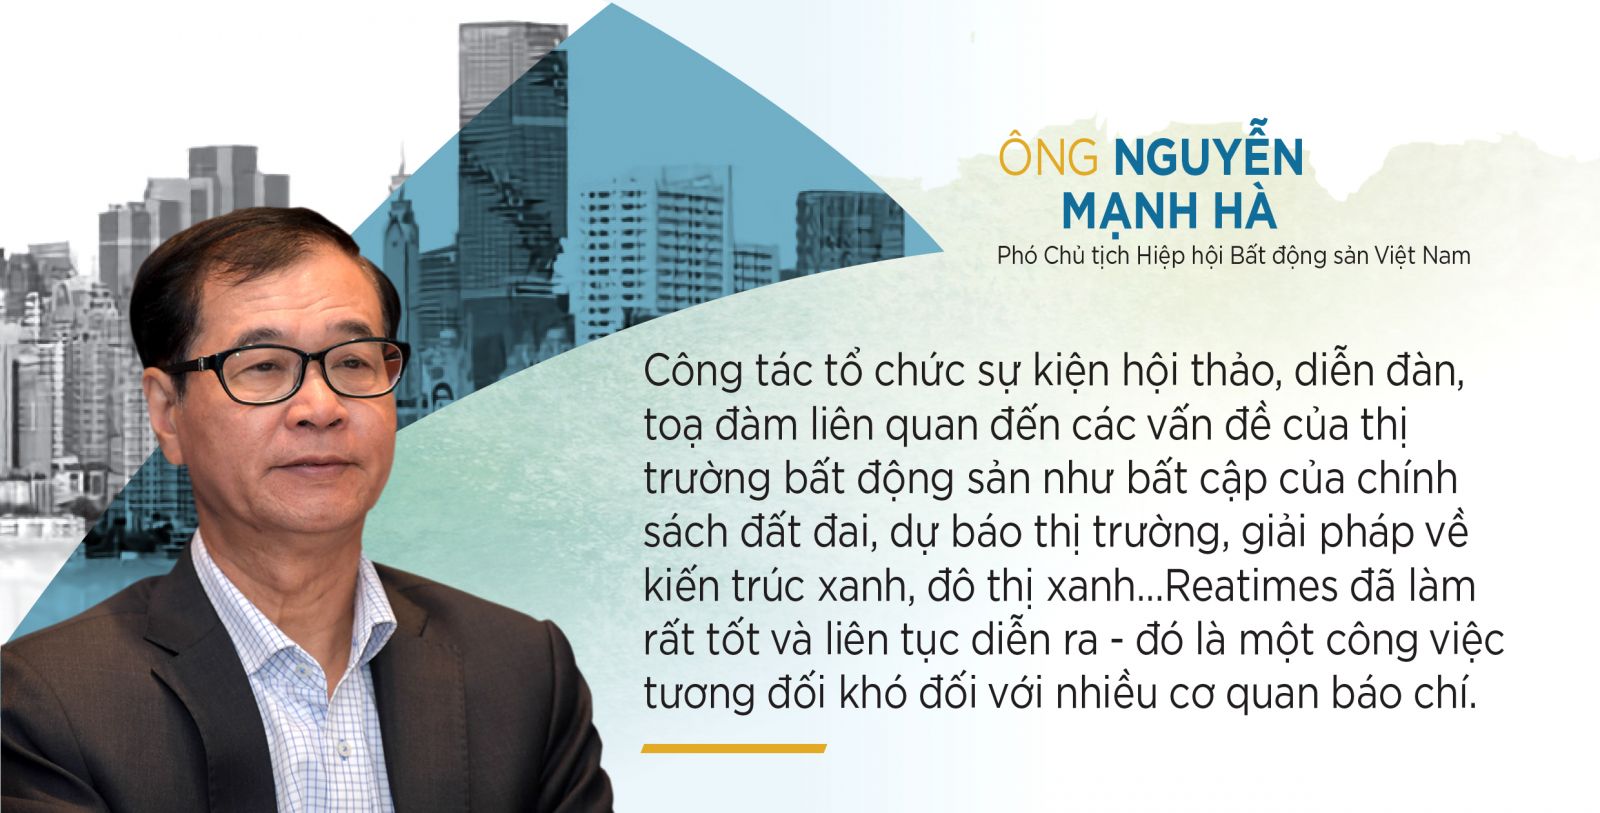 Ông Nguyễn Mạnh Hà, Phó Chủ tịch Hiệp hội Bất động sản Việt Nam, Chủ tịch Hội Môi giới Bất động sản Việt Nam